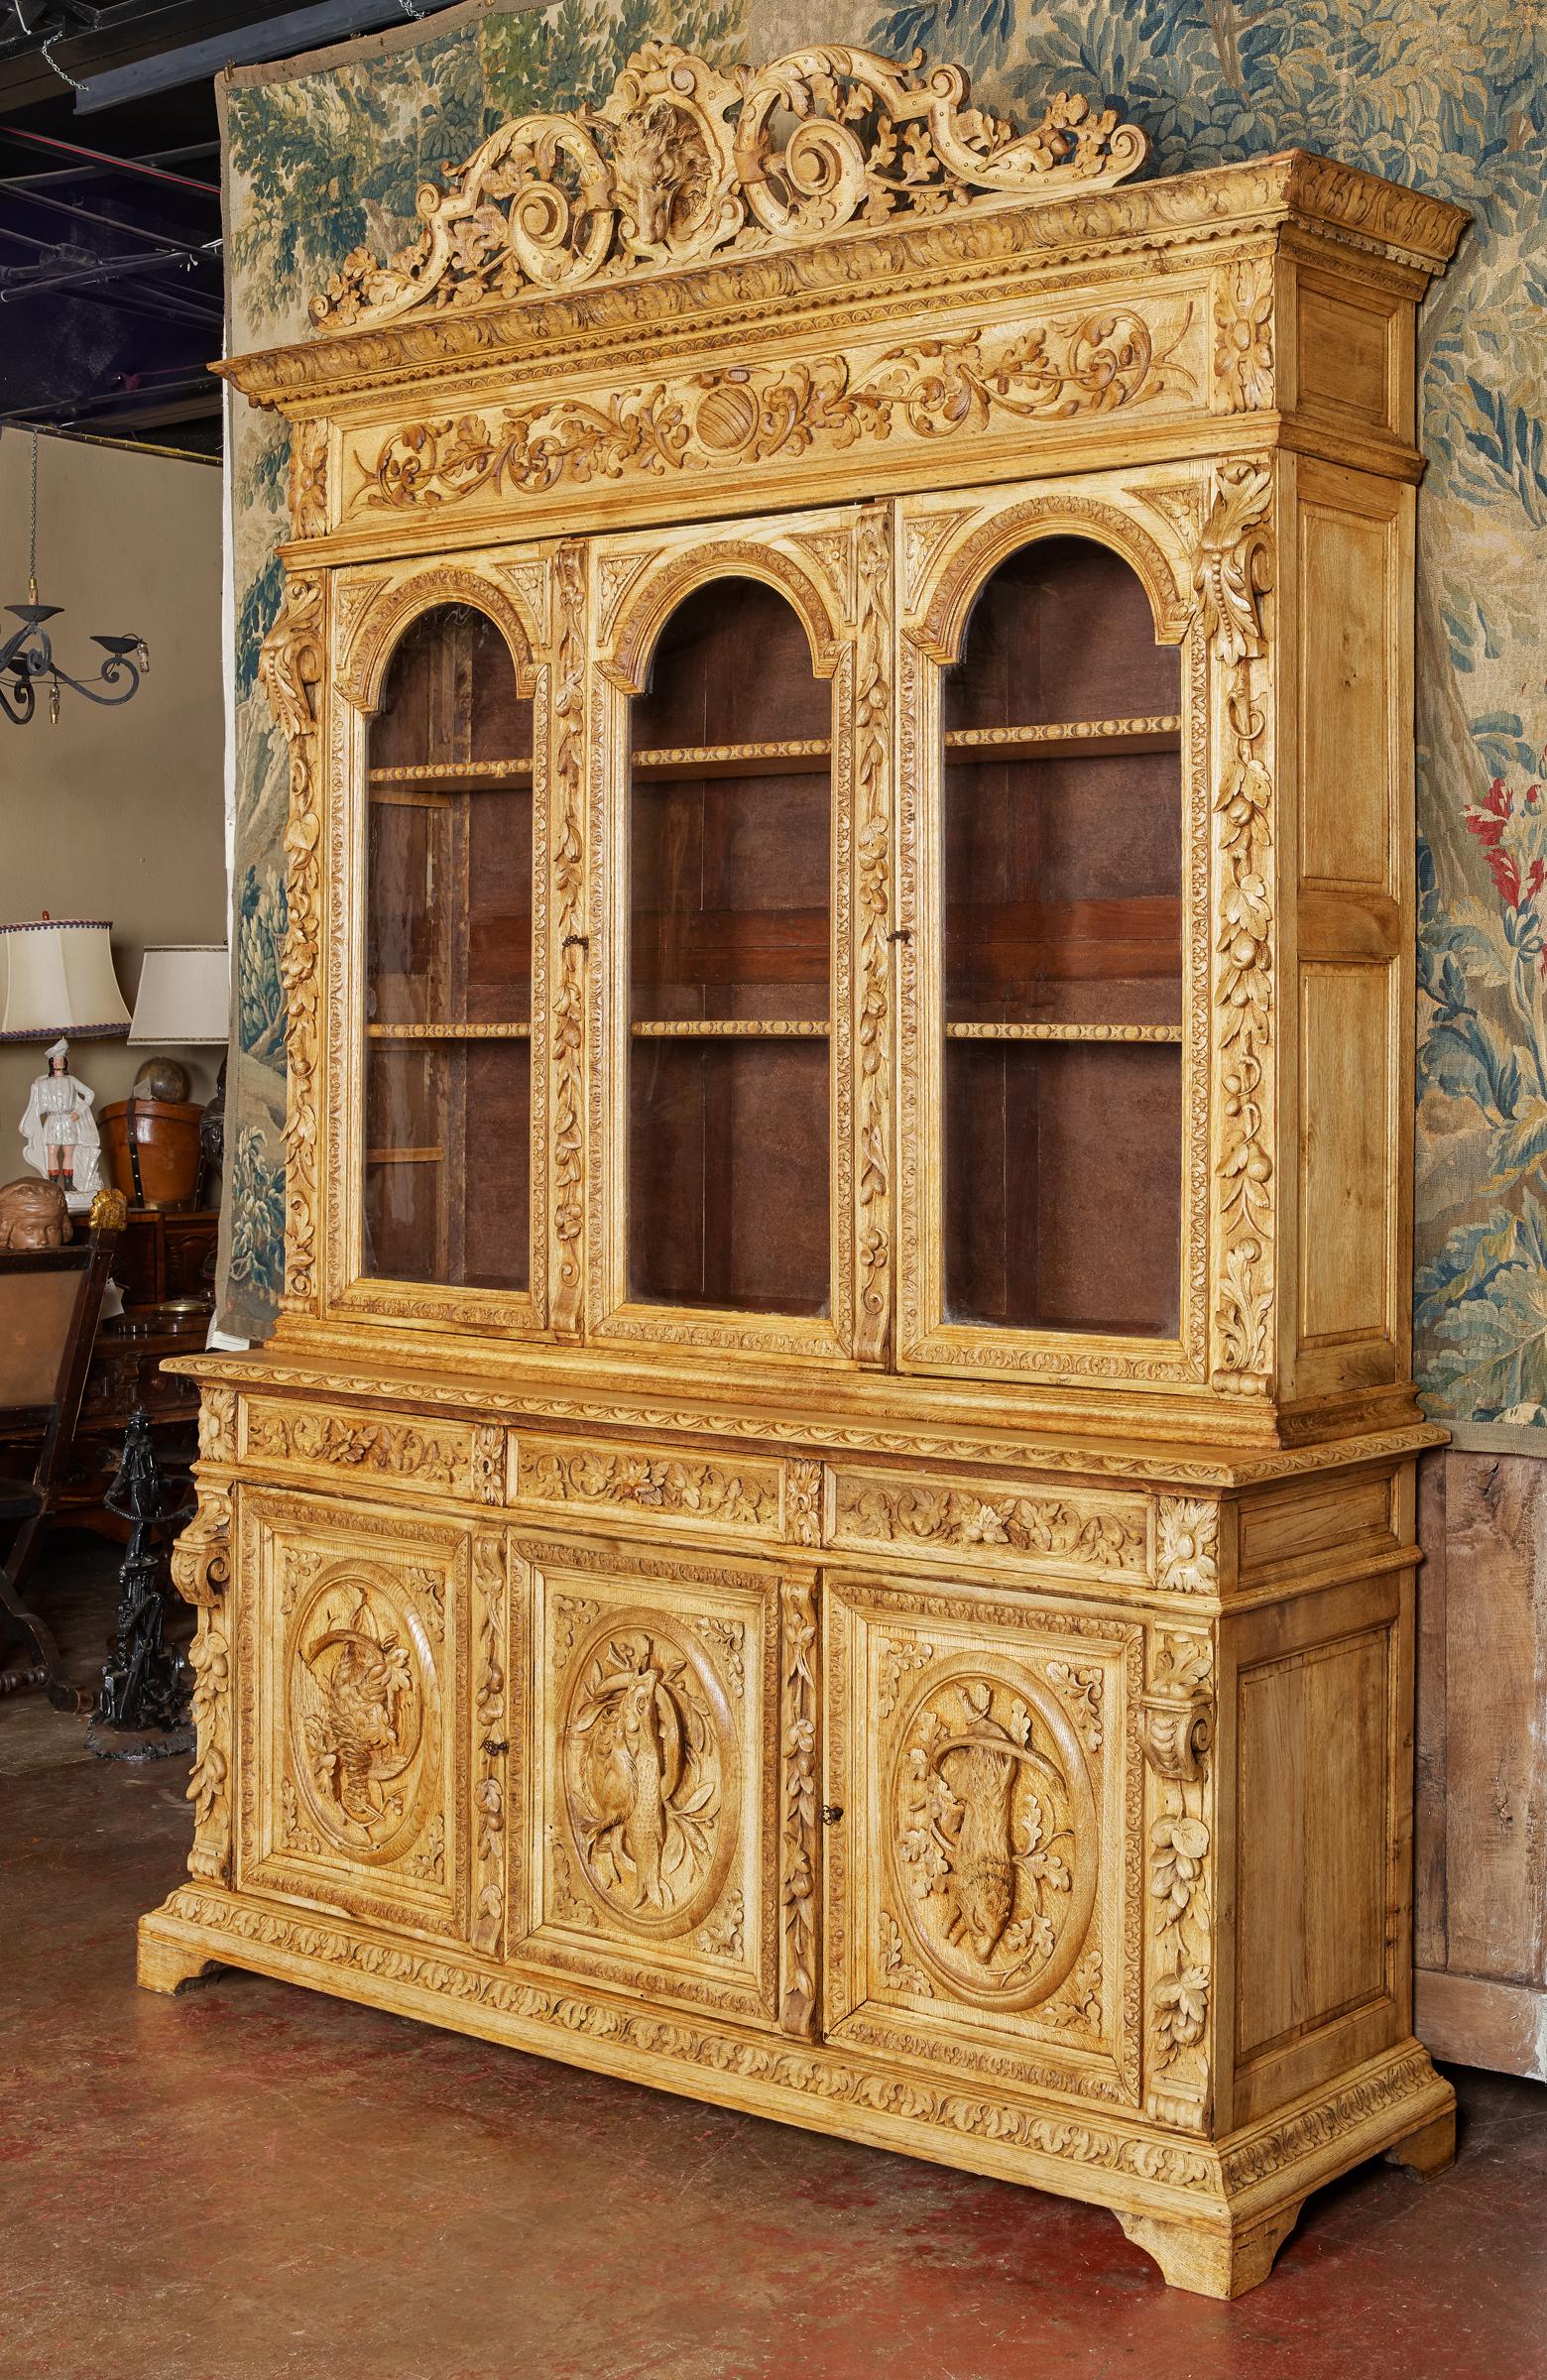 Ce spectaculaire cabinet de chasse ancien a été fabriqué dans le nord de la France vers 1870. La grande bibliothèque, construite en deux sections, repose sur une base moulée reposant sur des pieds en équerre, et présente des sculptures exquises à